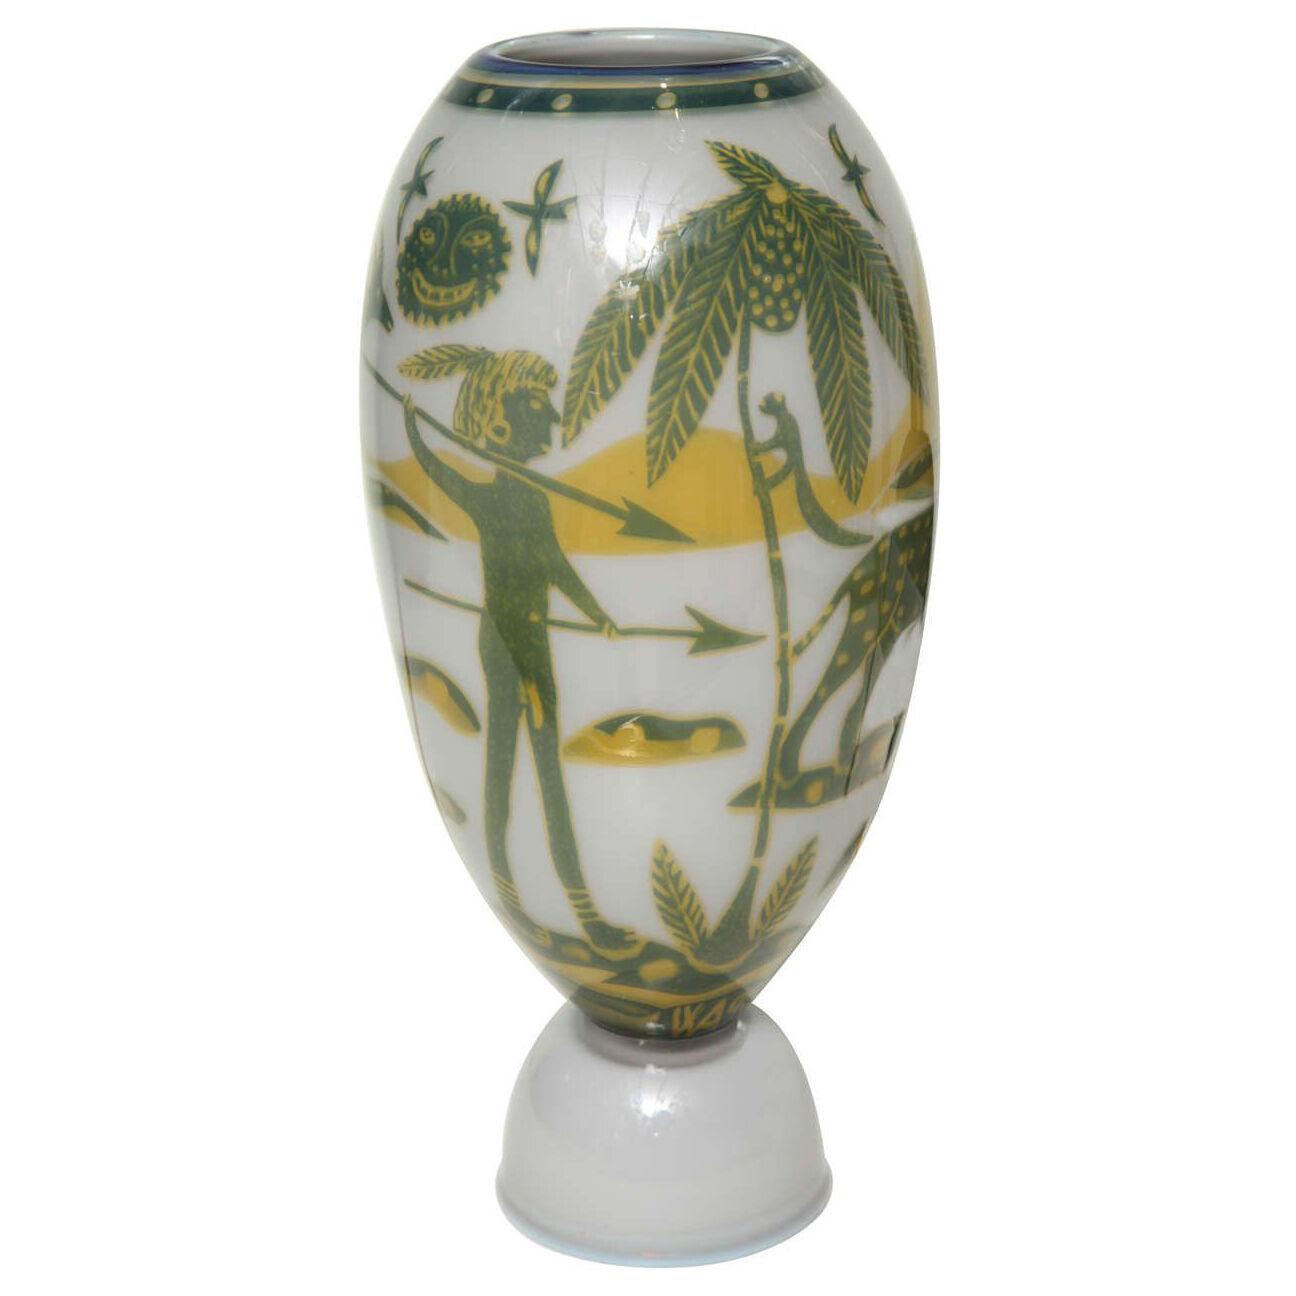 Swedish Studio Glass Vase by Wilke Adolfsson